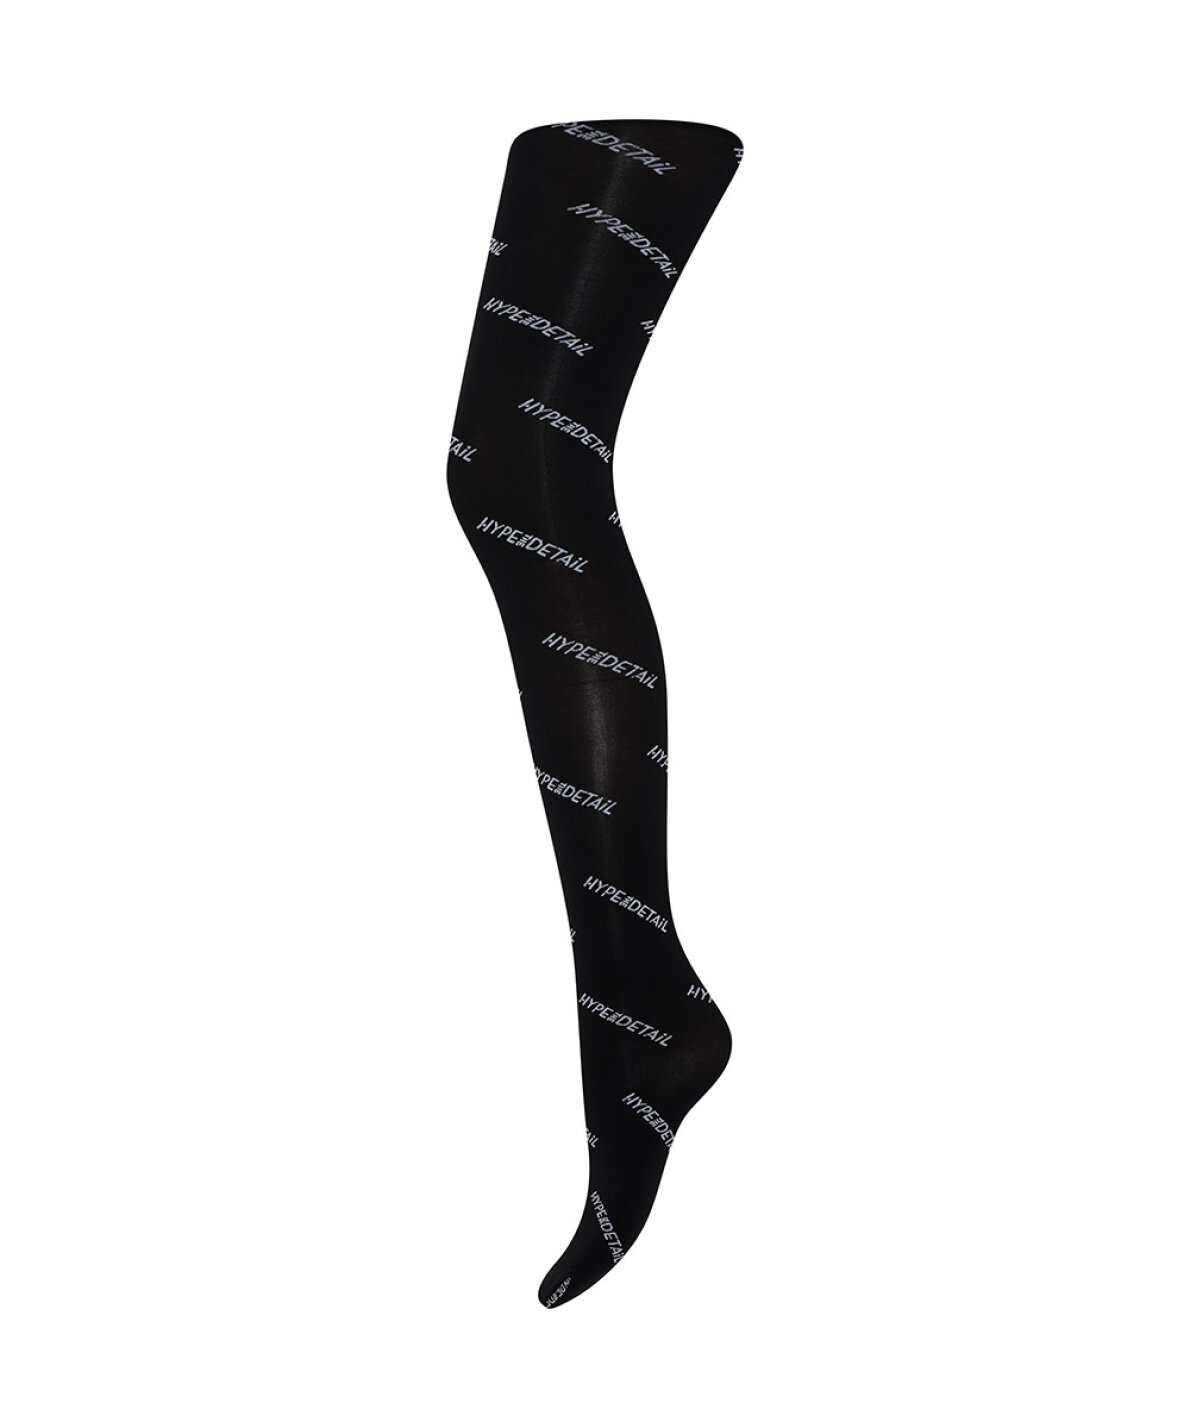 Assimilate omdømme Appel til at være attraktiv Wunderwear - Logo Ankle 50 Den Sock - Strømpebuks fra Hype The Detail